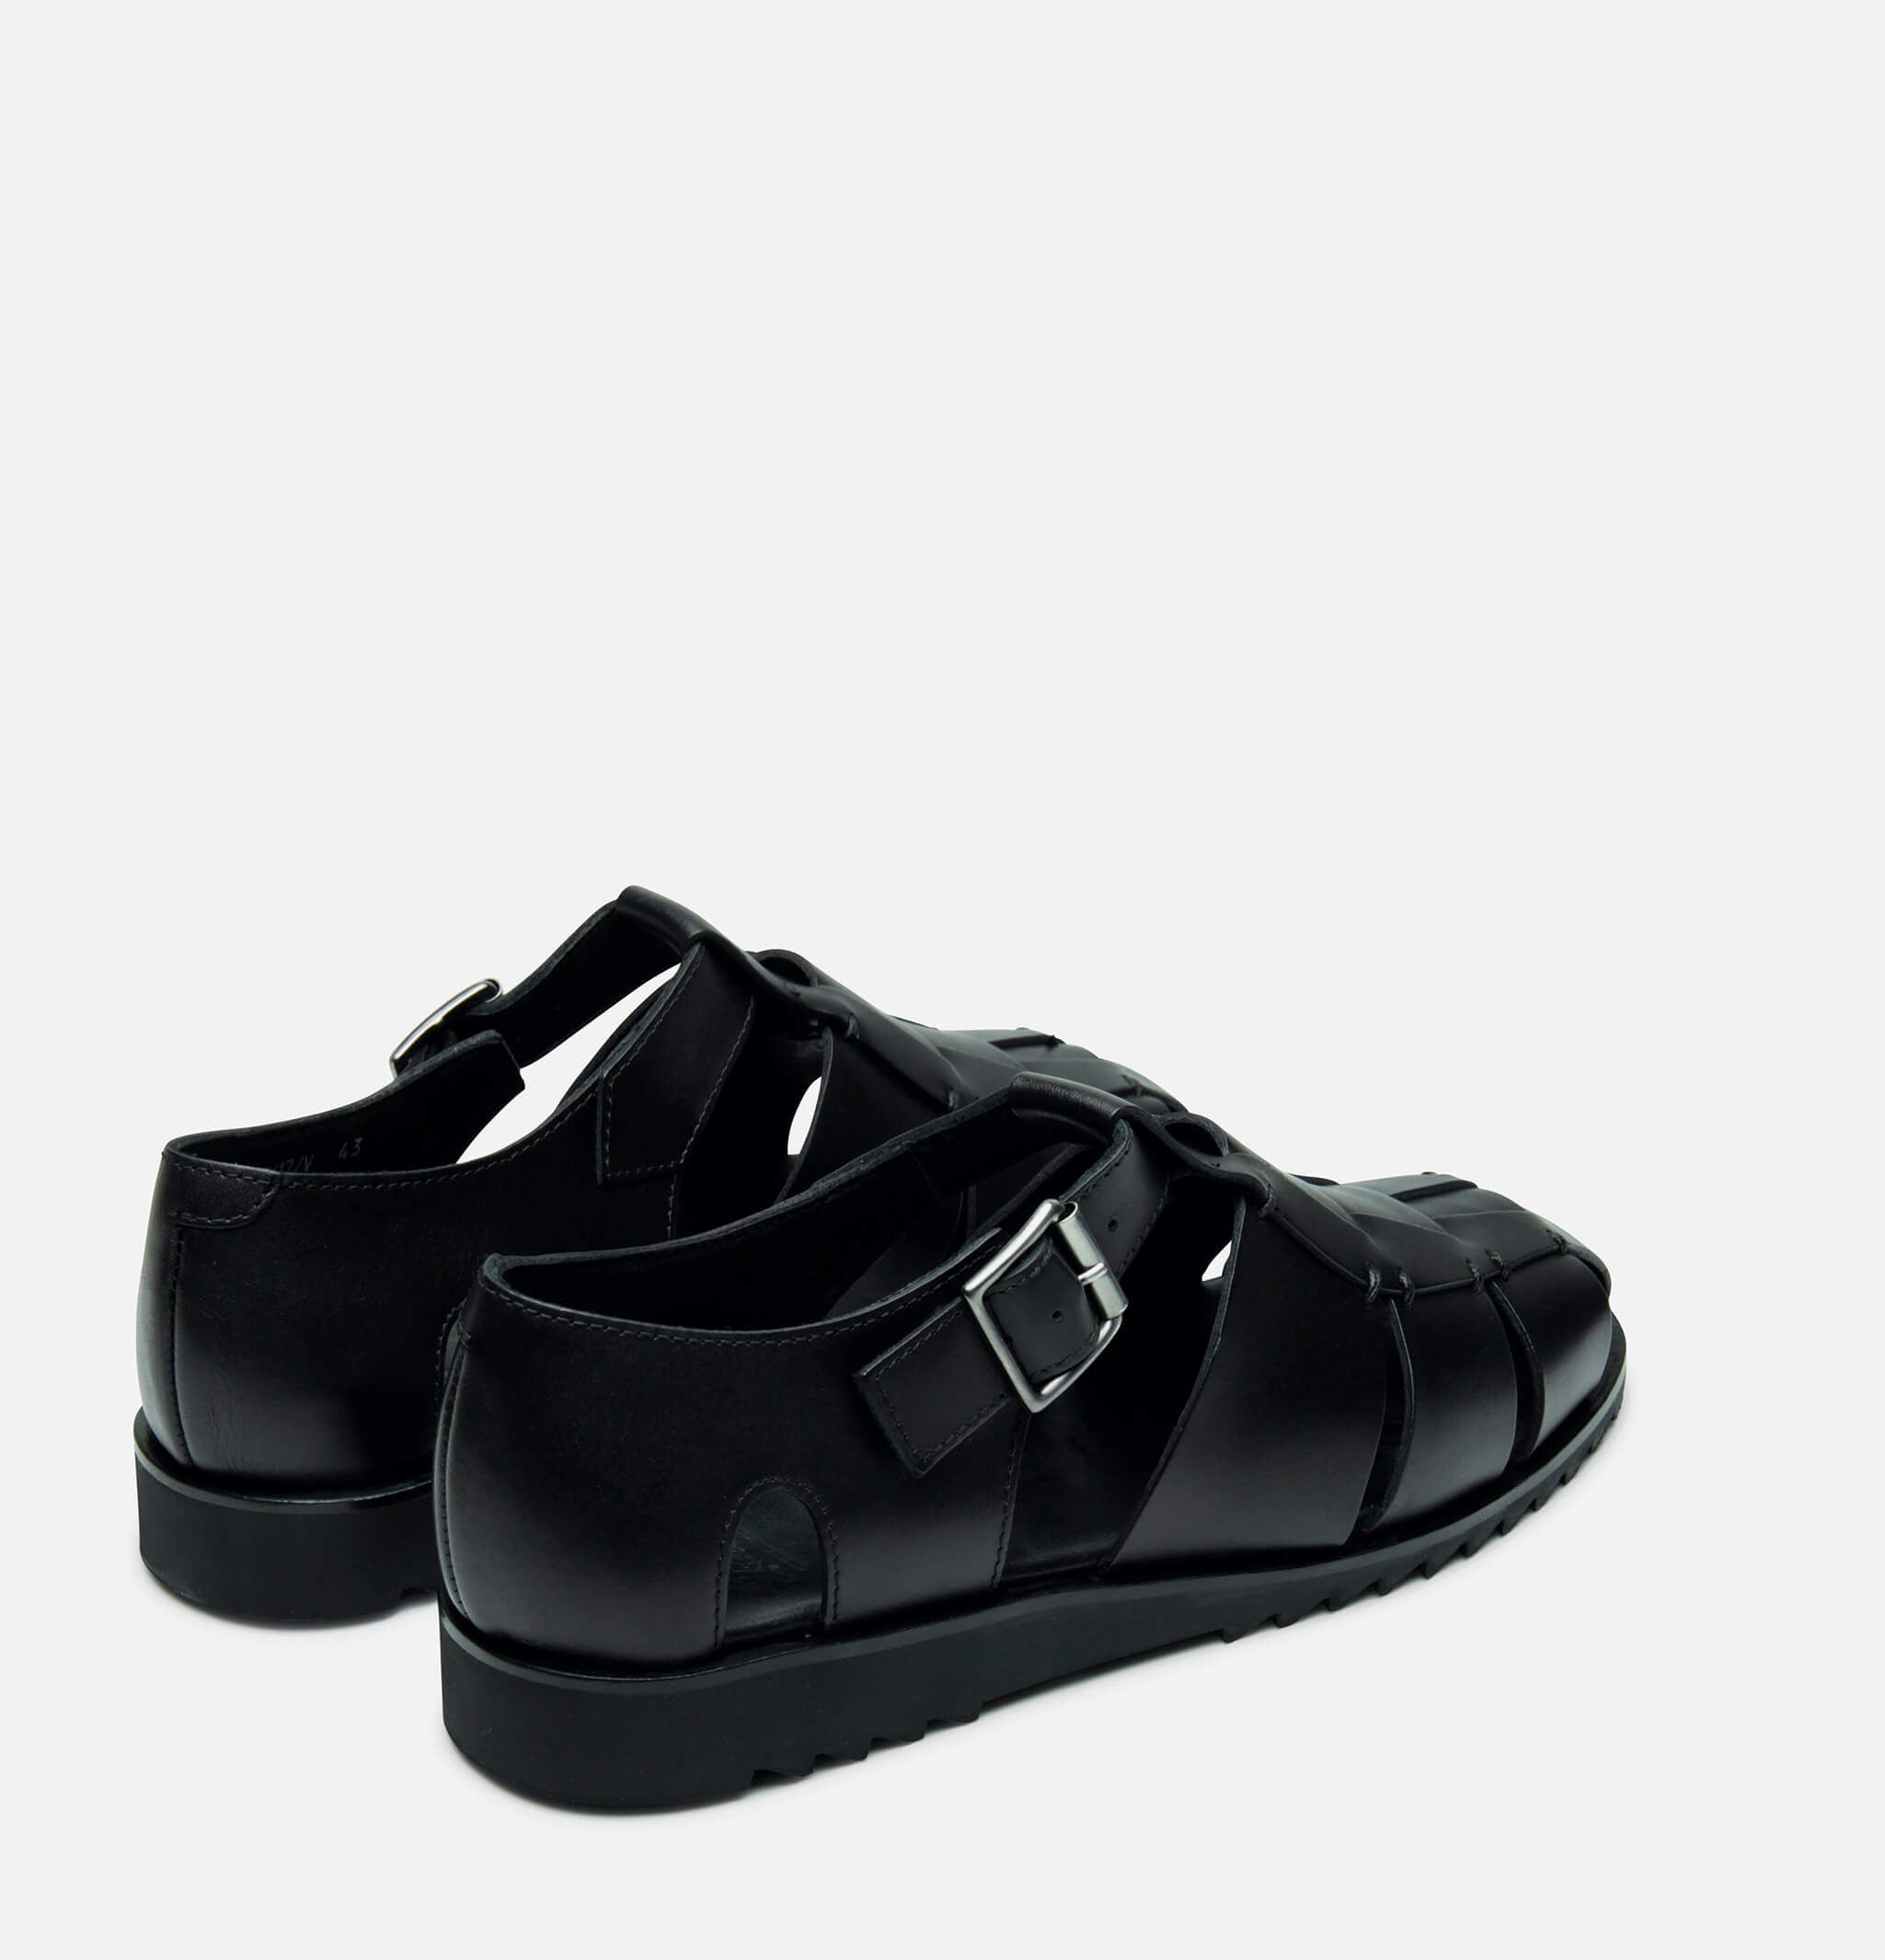 Pacific Shoes Black